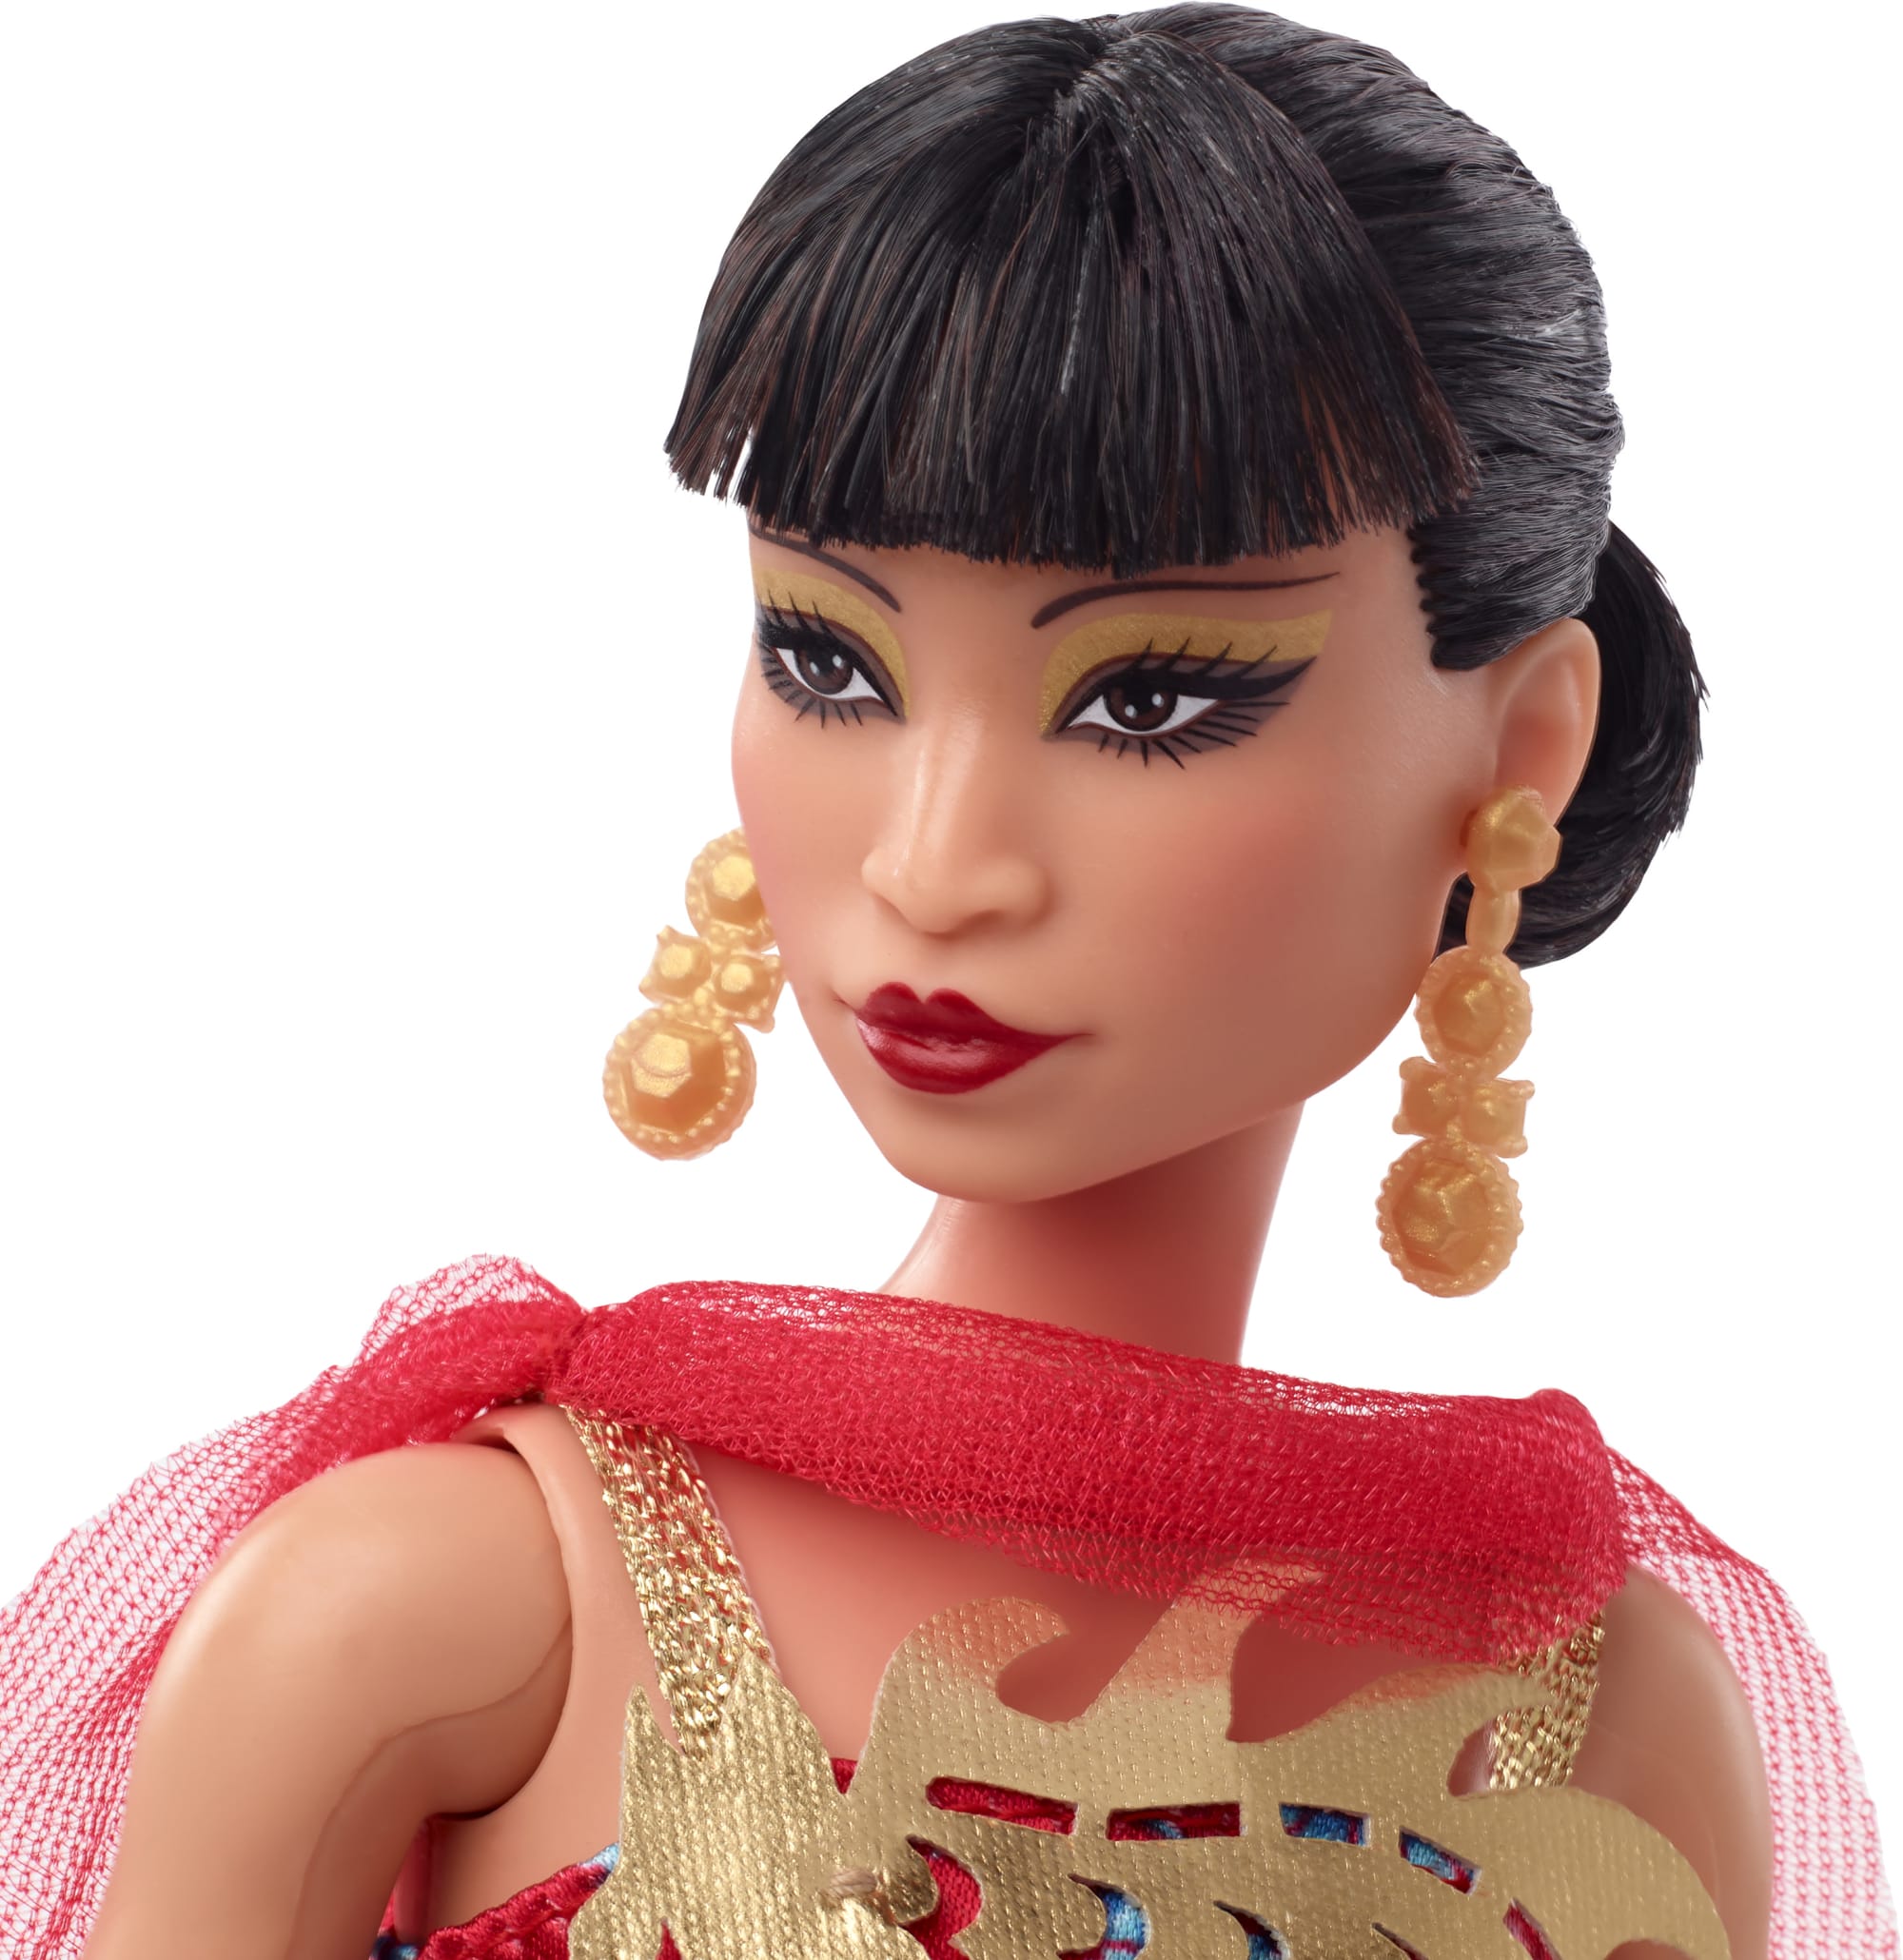 Barbie Doll | Anna May Wong | Inspiring Women | MATTEL